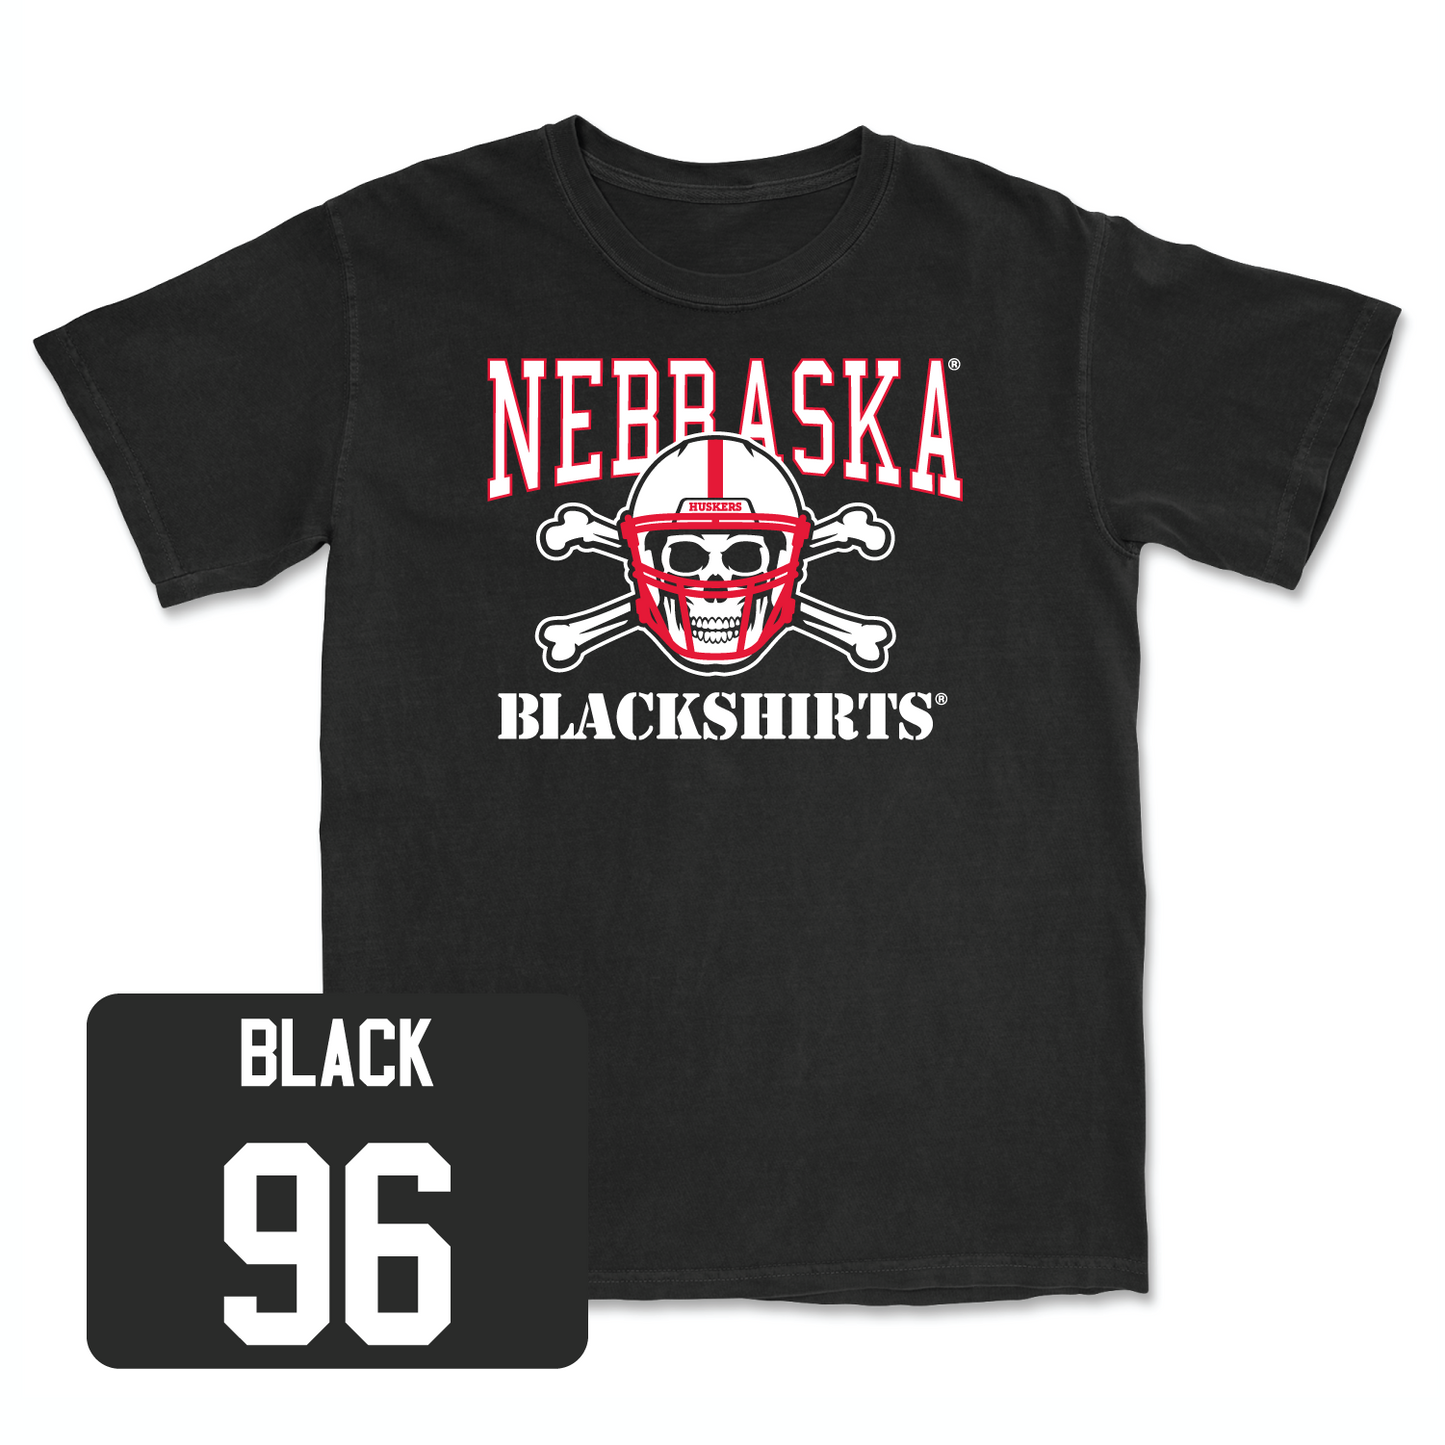 Black Football Blackshirts Tee Small / Leslie Black | #96